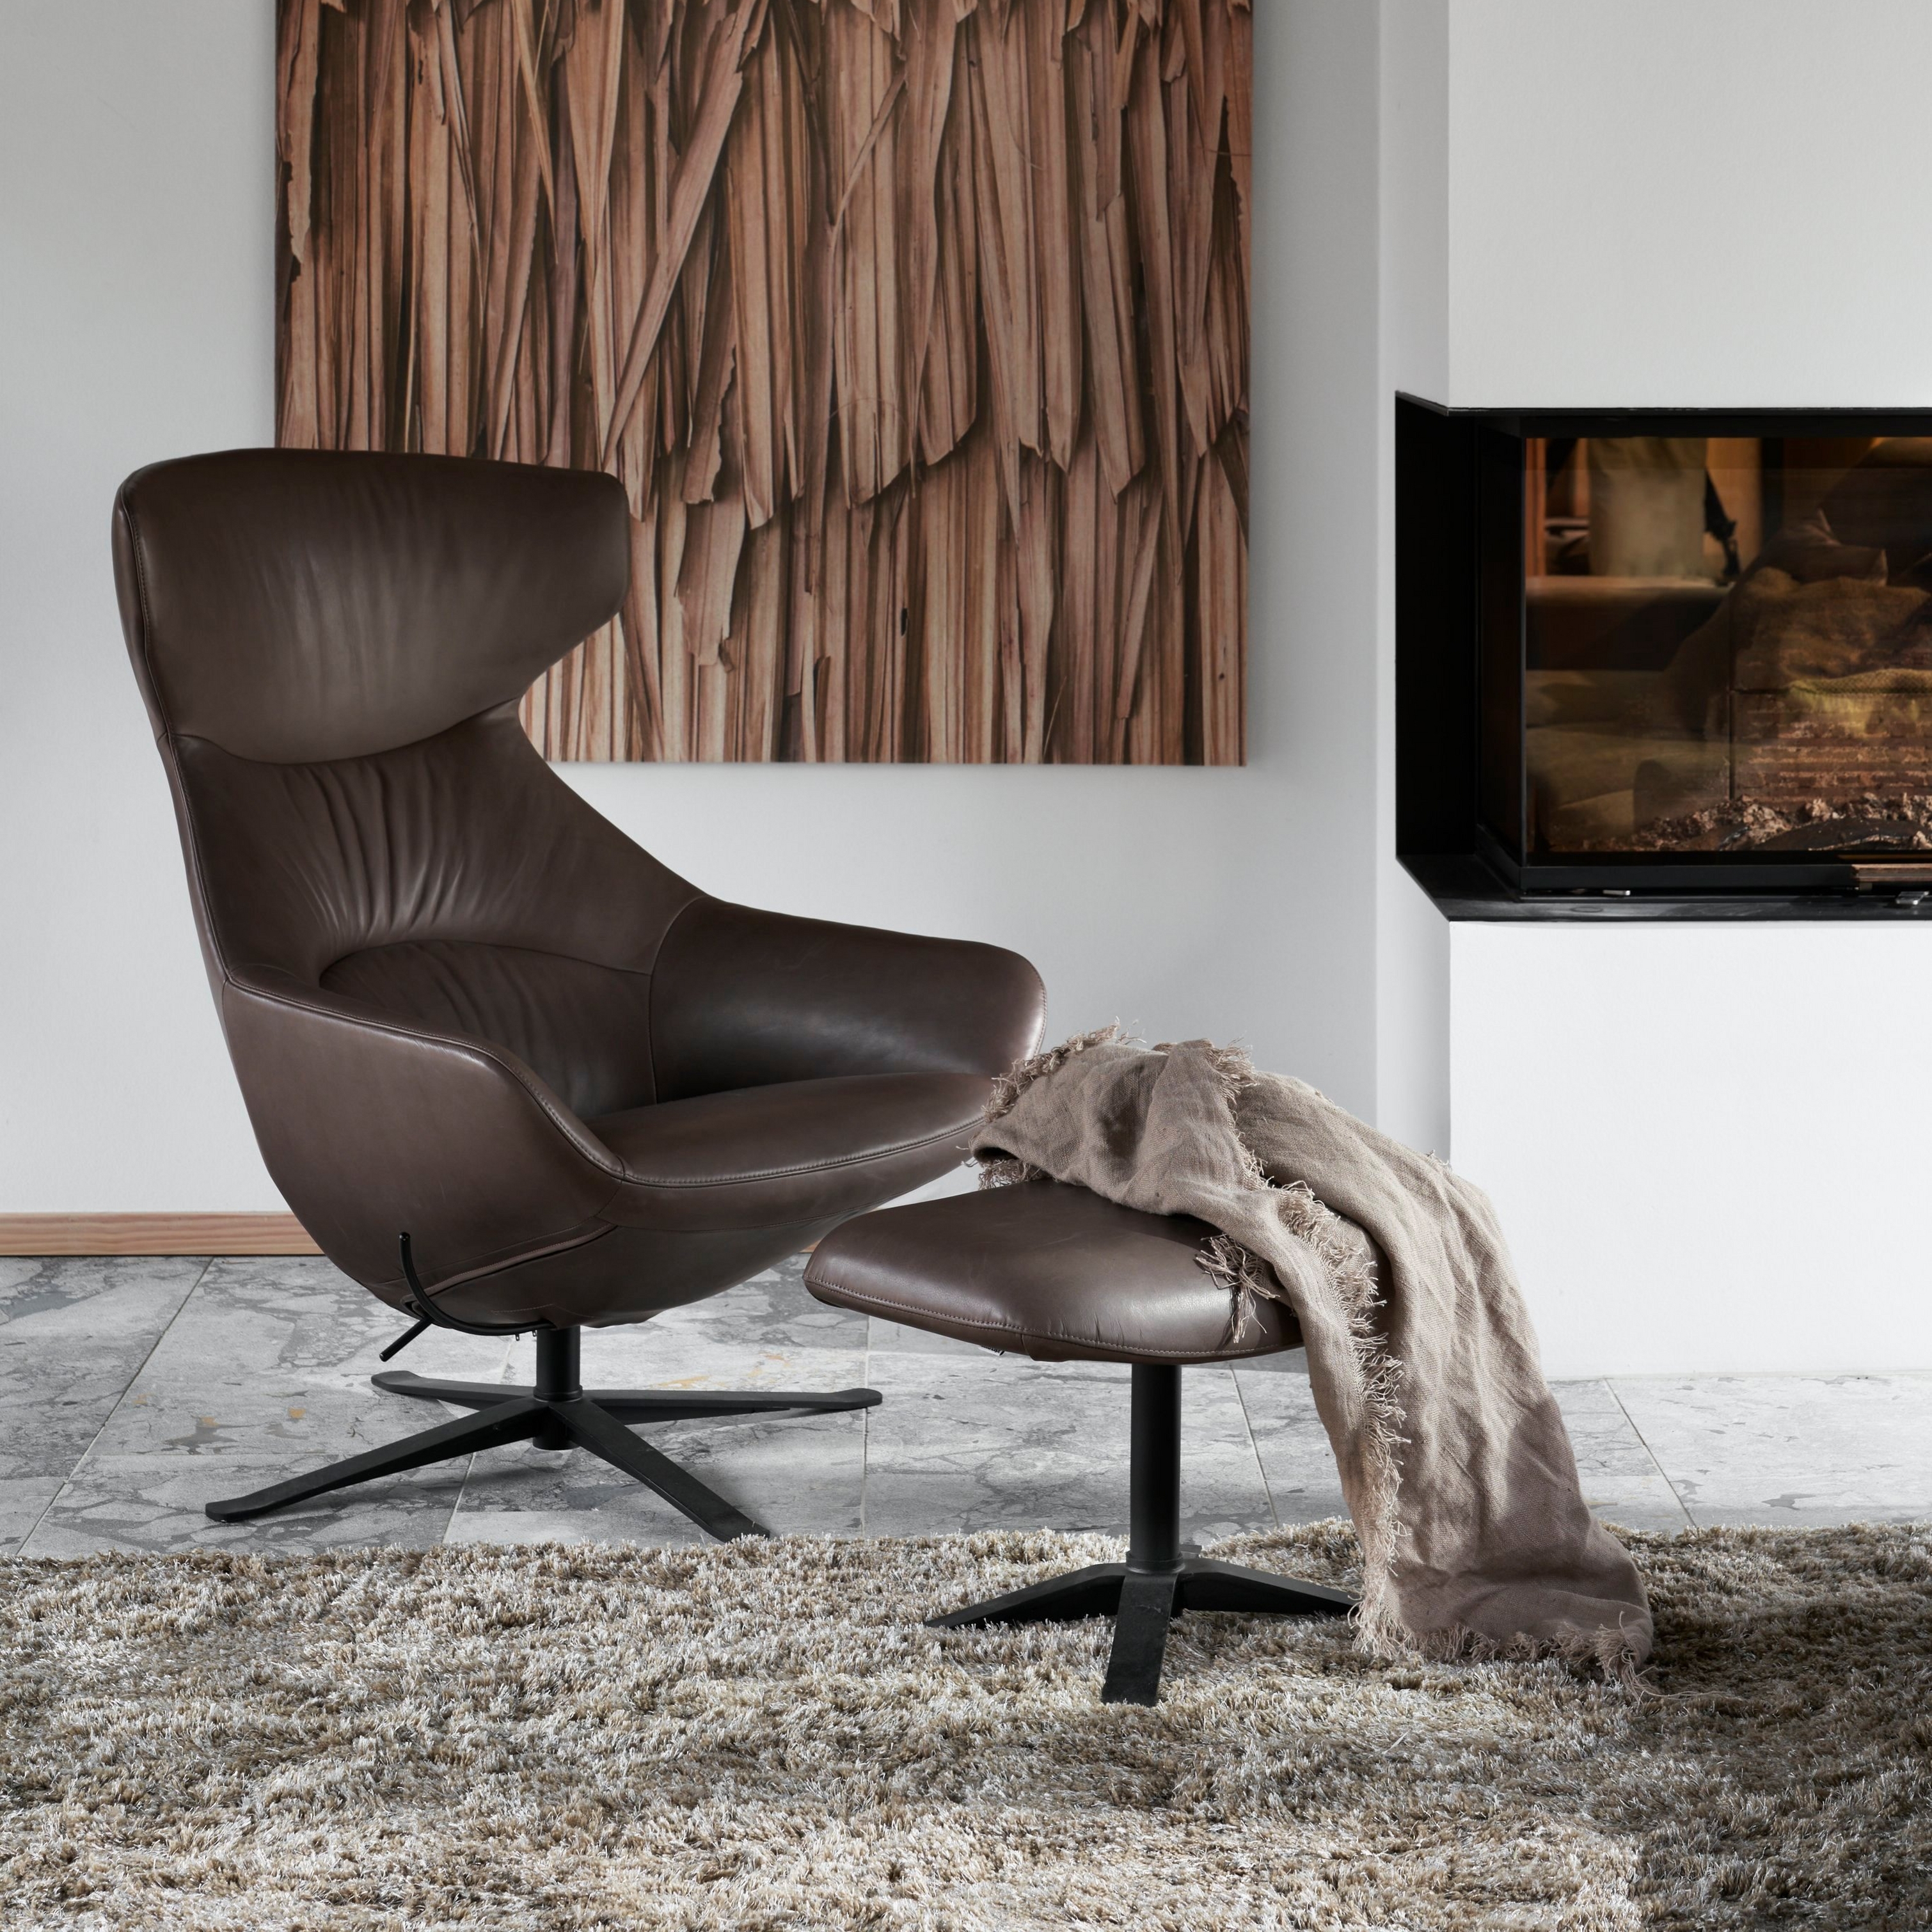 Fauteuil en cuir marron moderne avec pouf, tapis à poils longs, décoration en bois et cheminée.